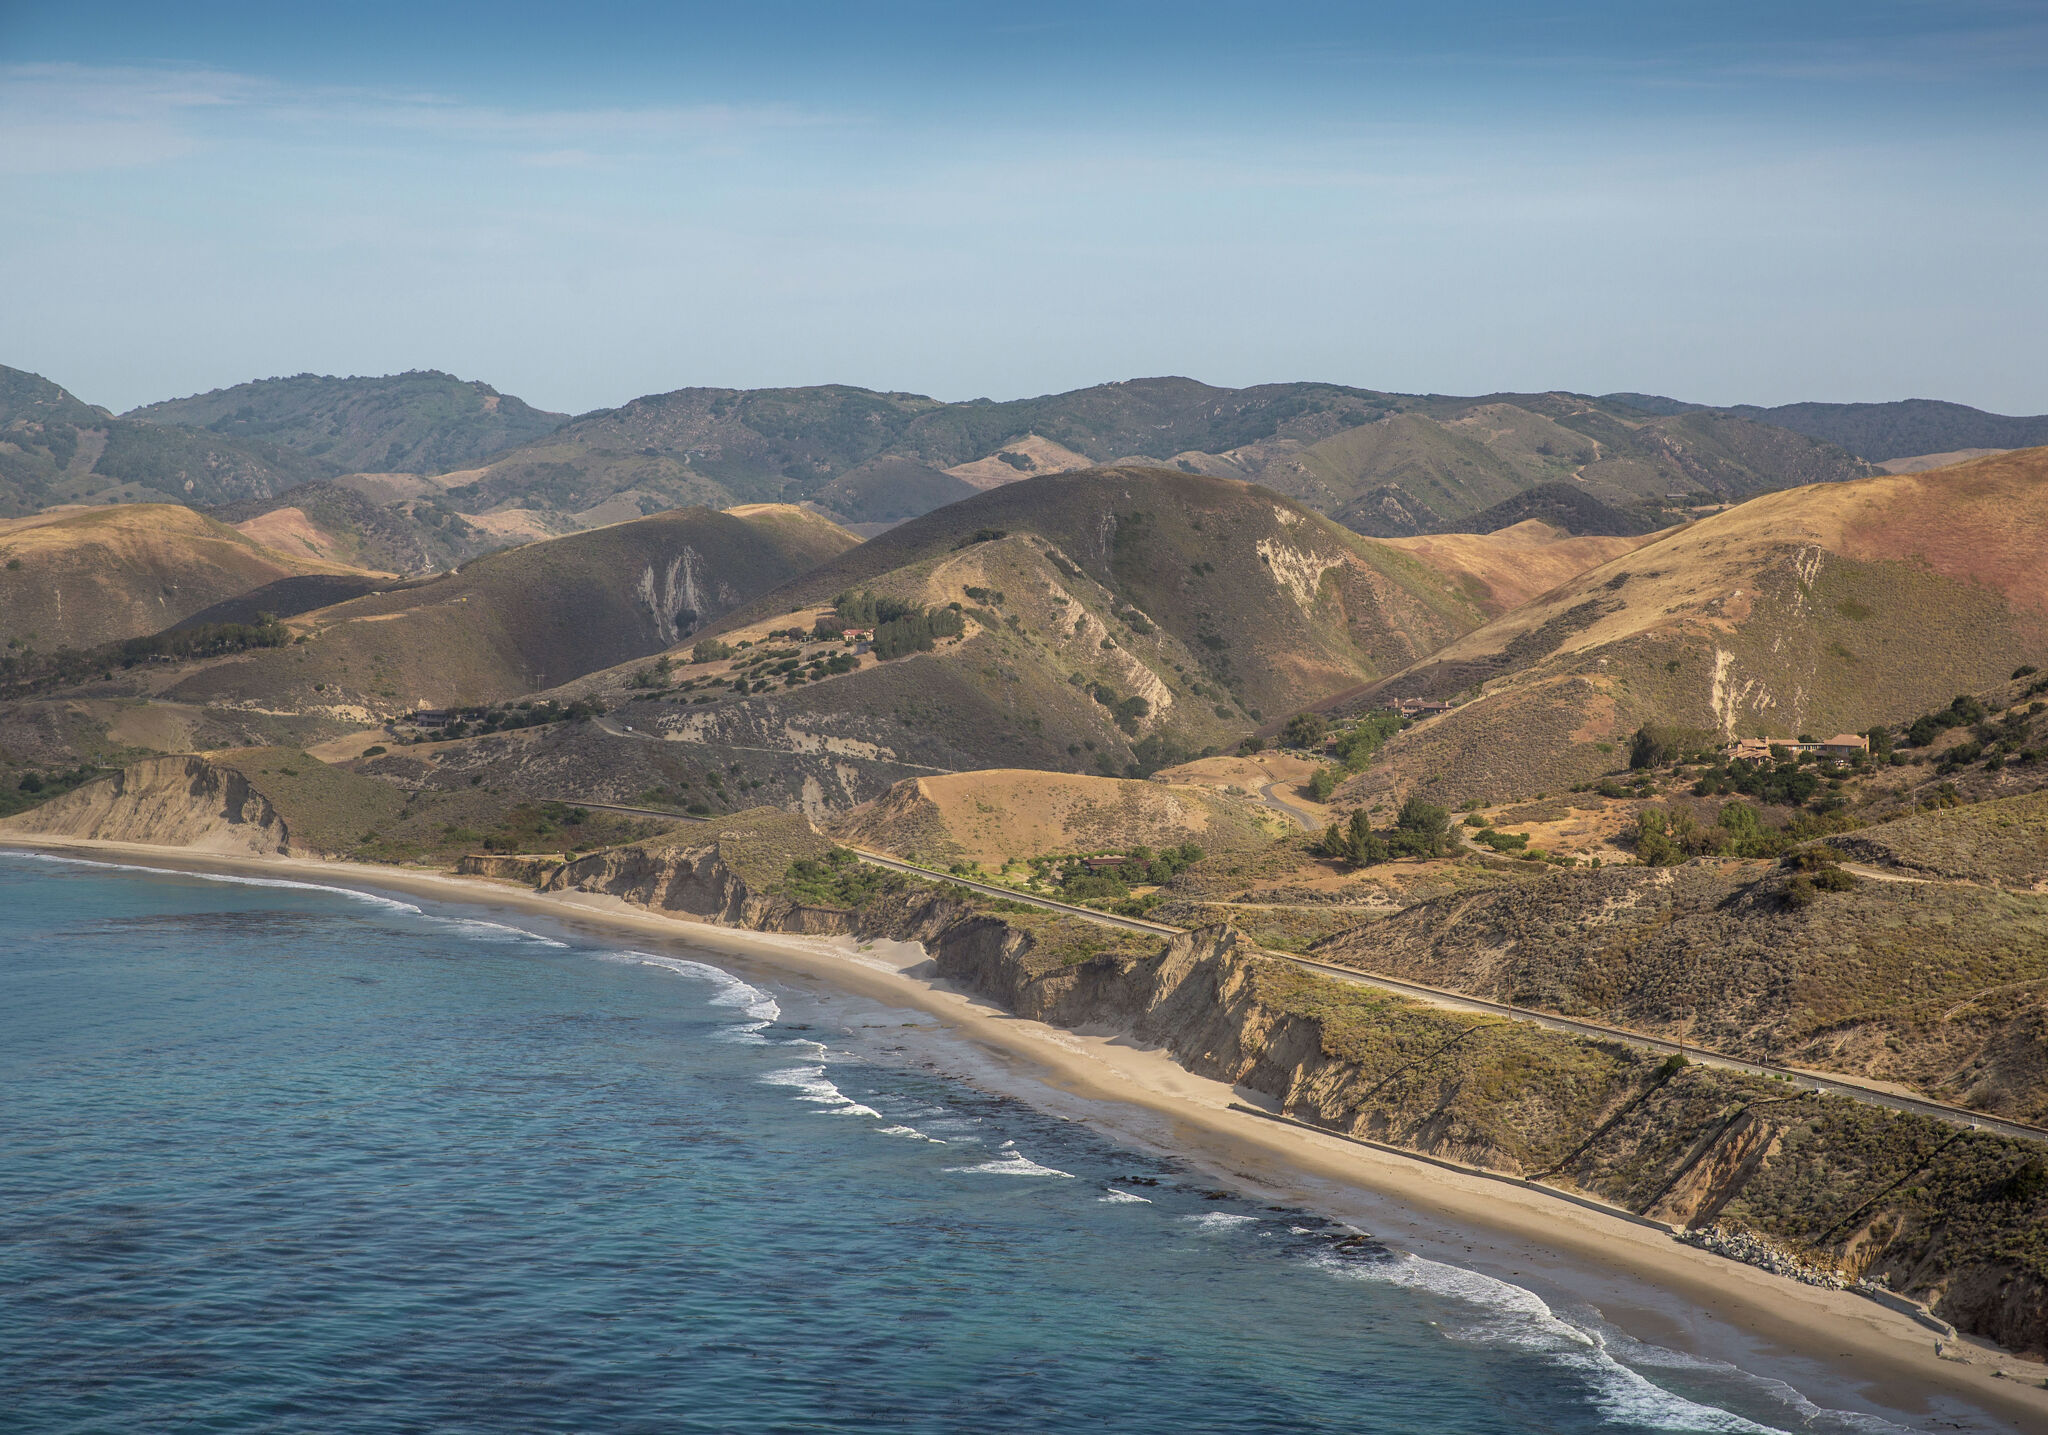 La propiedad de 100 acres de James Cameron en California vale $ 33 millones